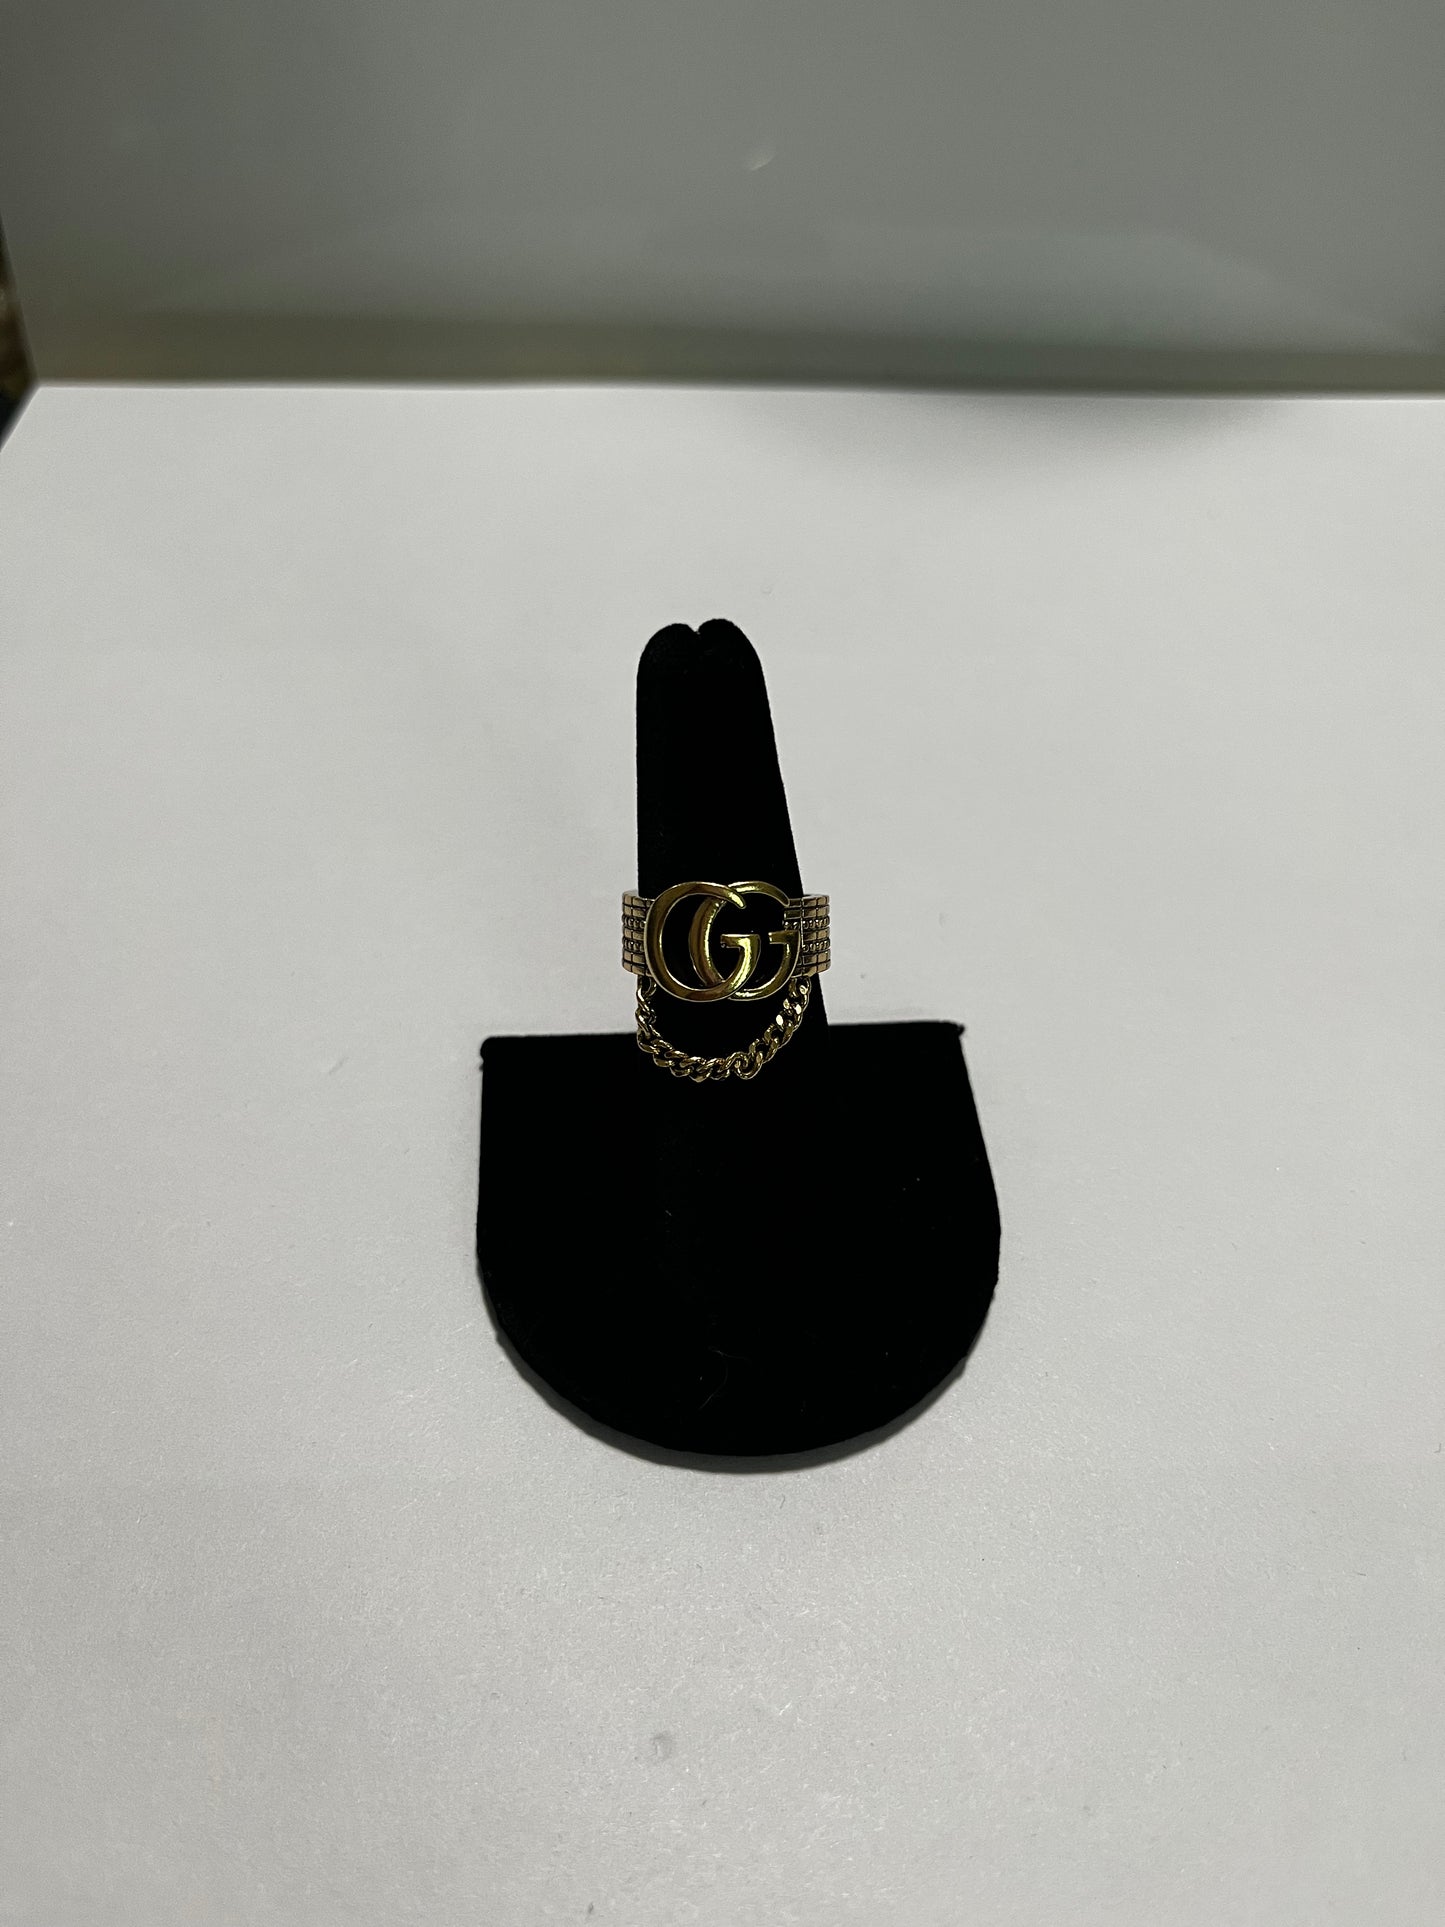 Gg Ring